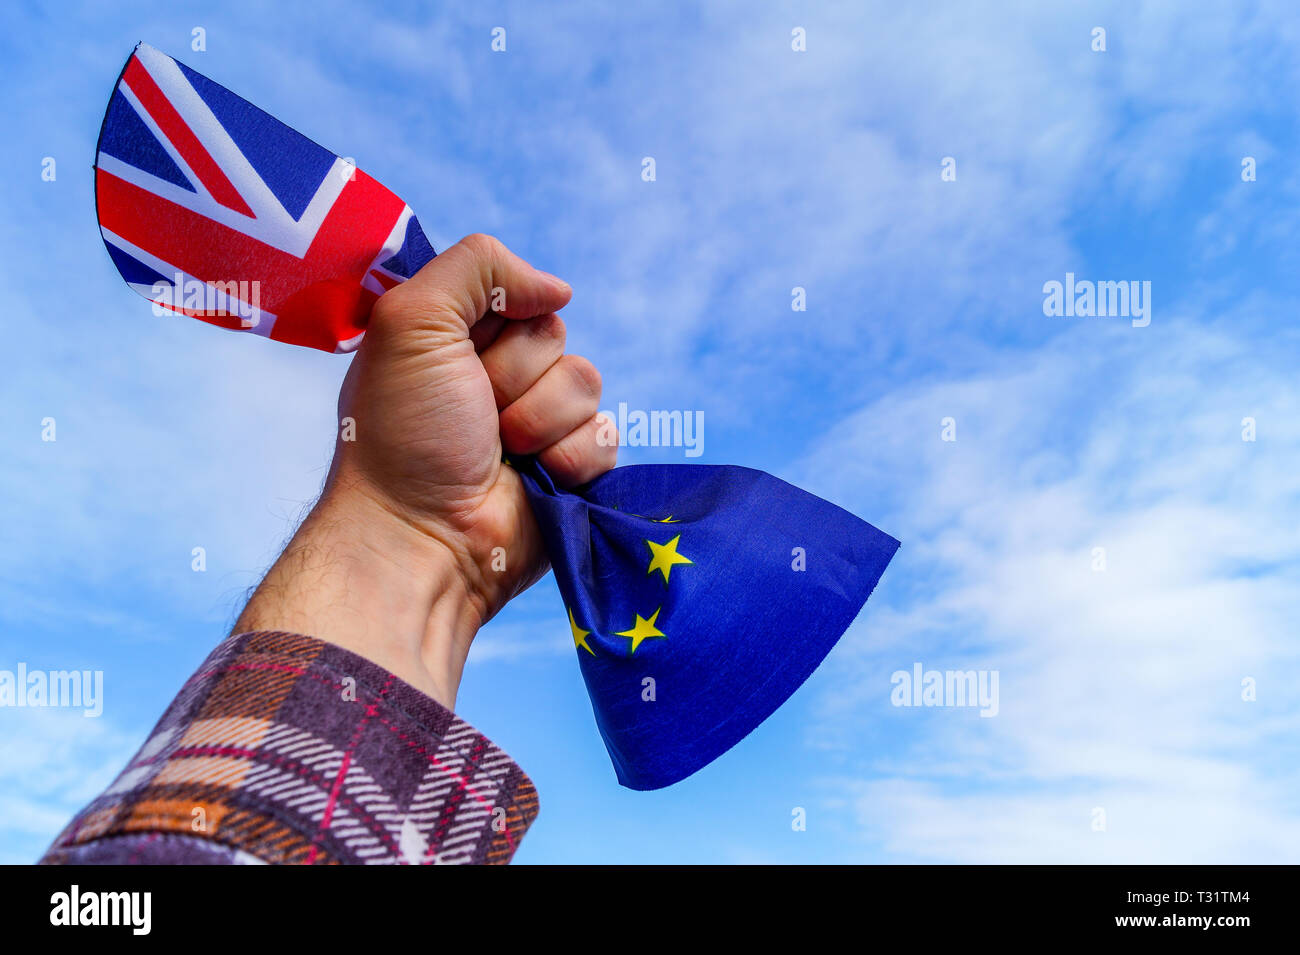 Un maschio di mano tiene in pugno la bandiere di Inghilterra e l'Unione europea contro un cielo blu e simboleggia Brexit o no Brexit. Immagine contiene copia s Foto Stock